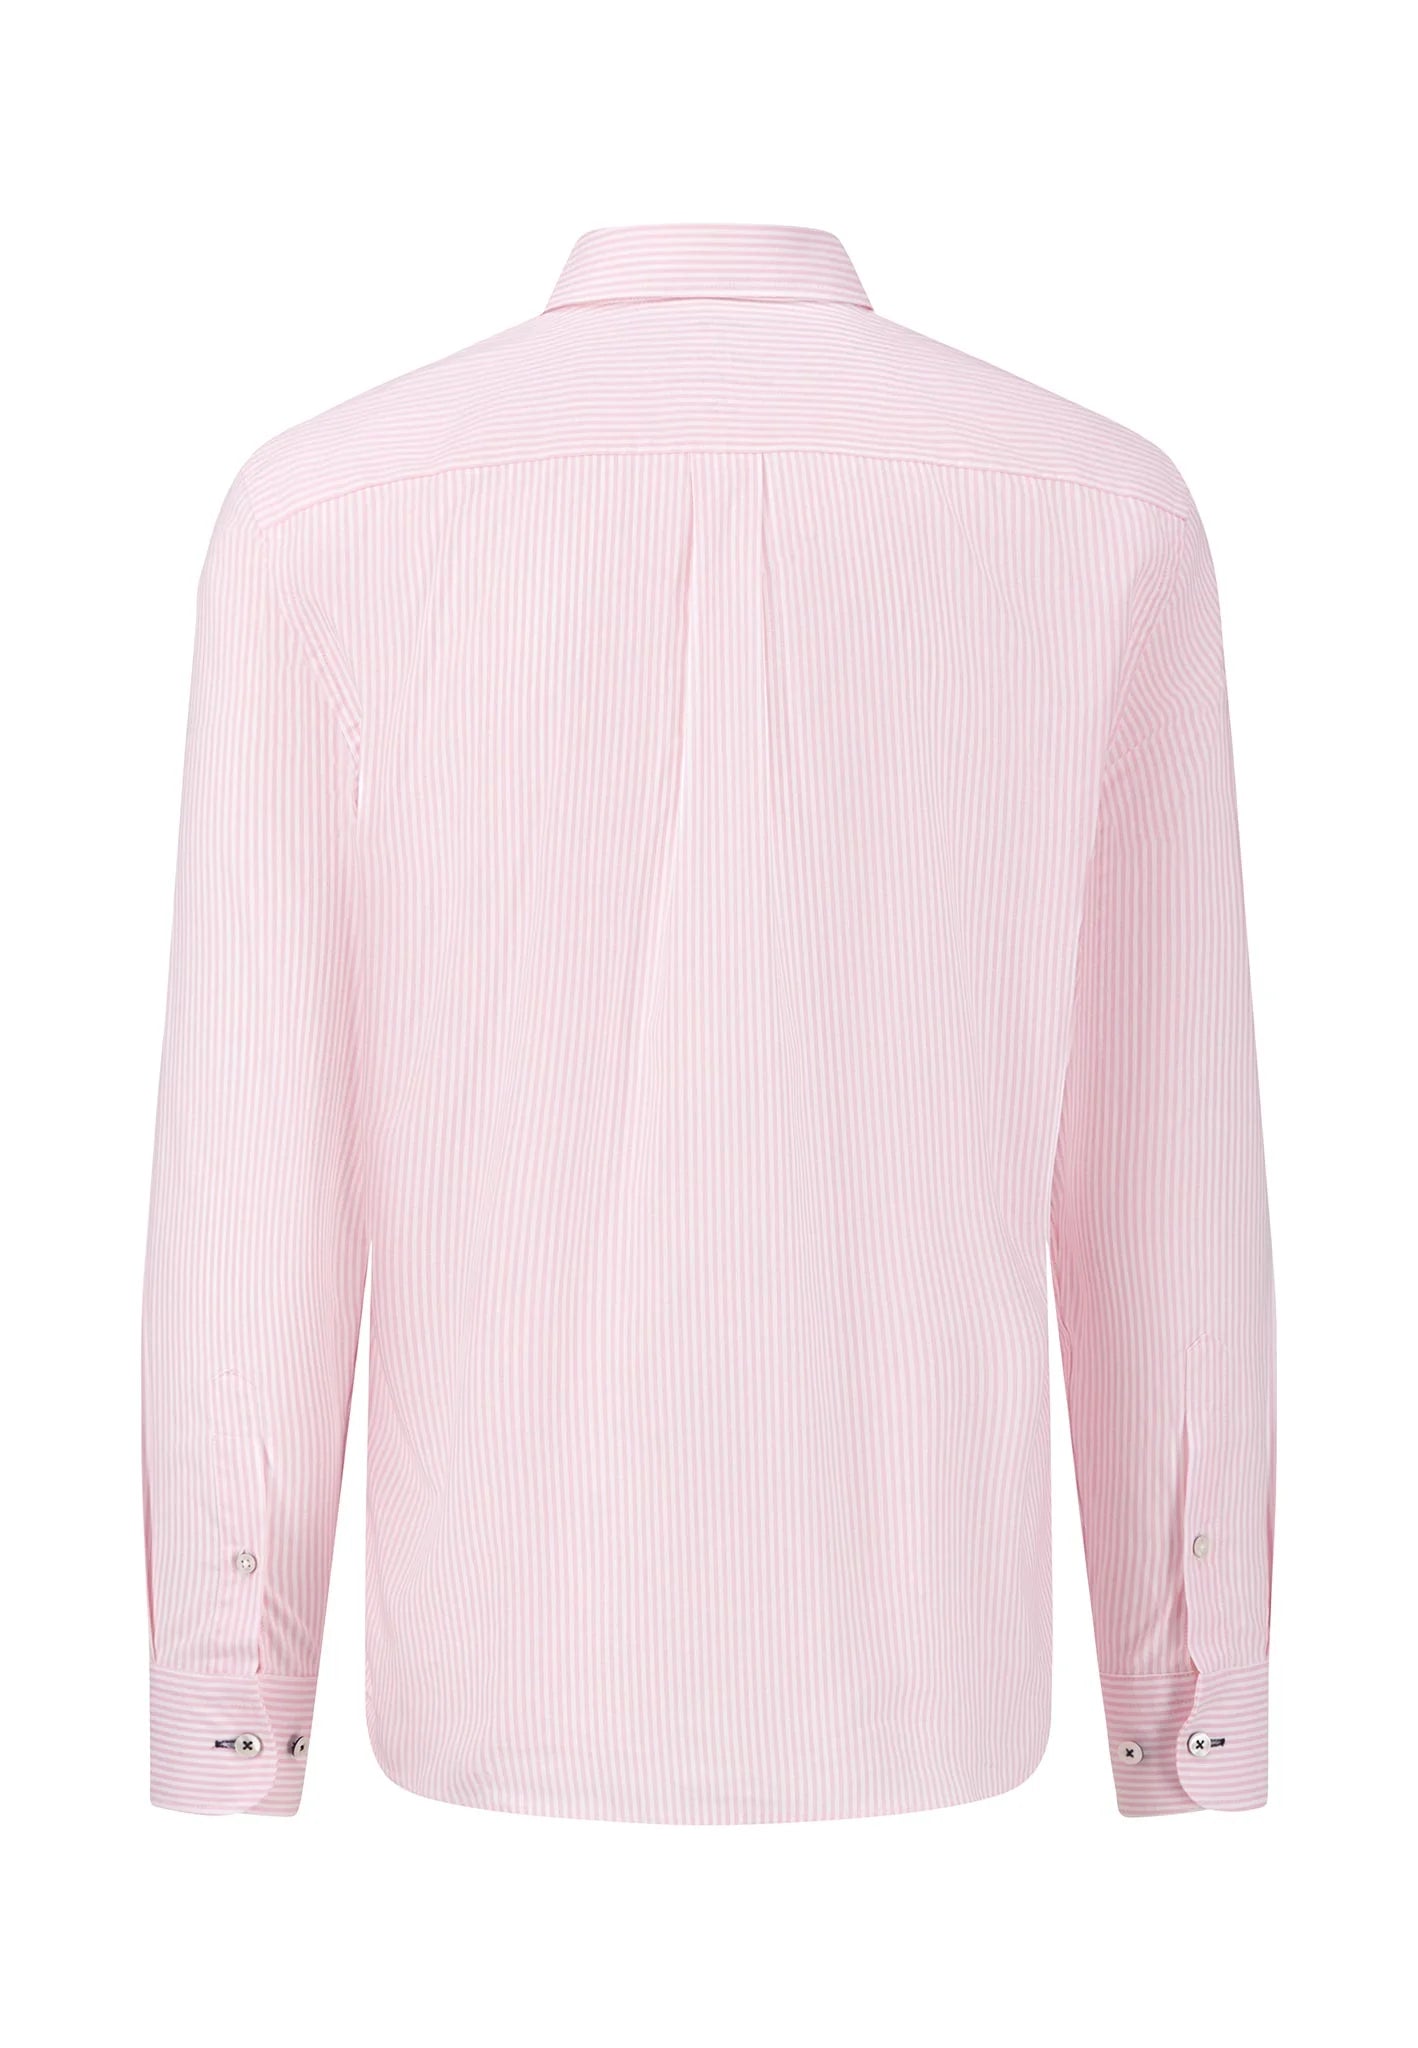 FYNCH HATTON Oxford Shirt - Men's Soft Cotton – Pink Stripe